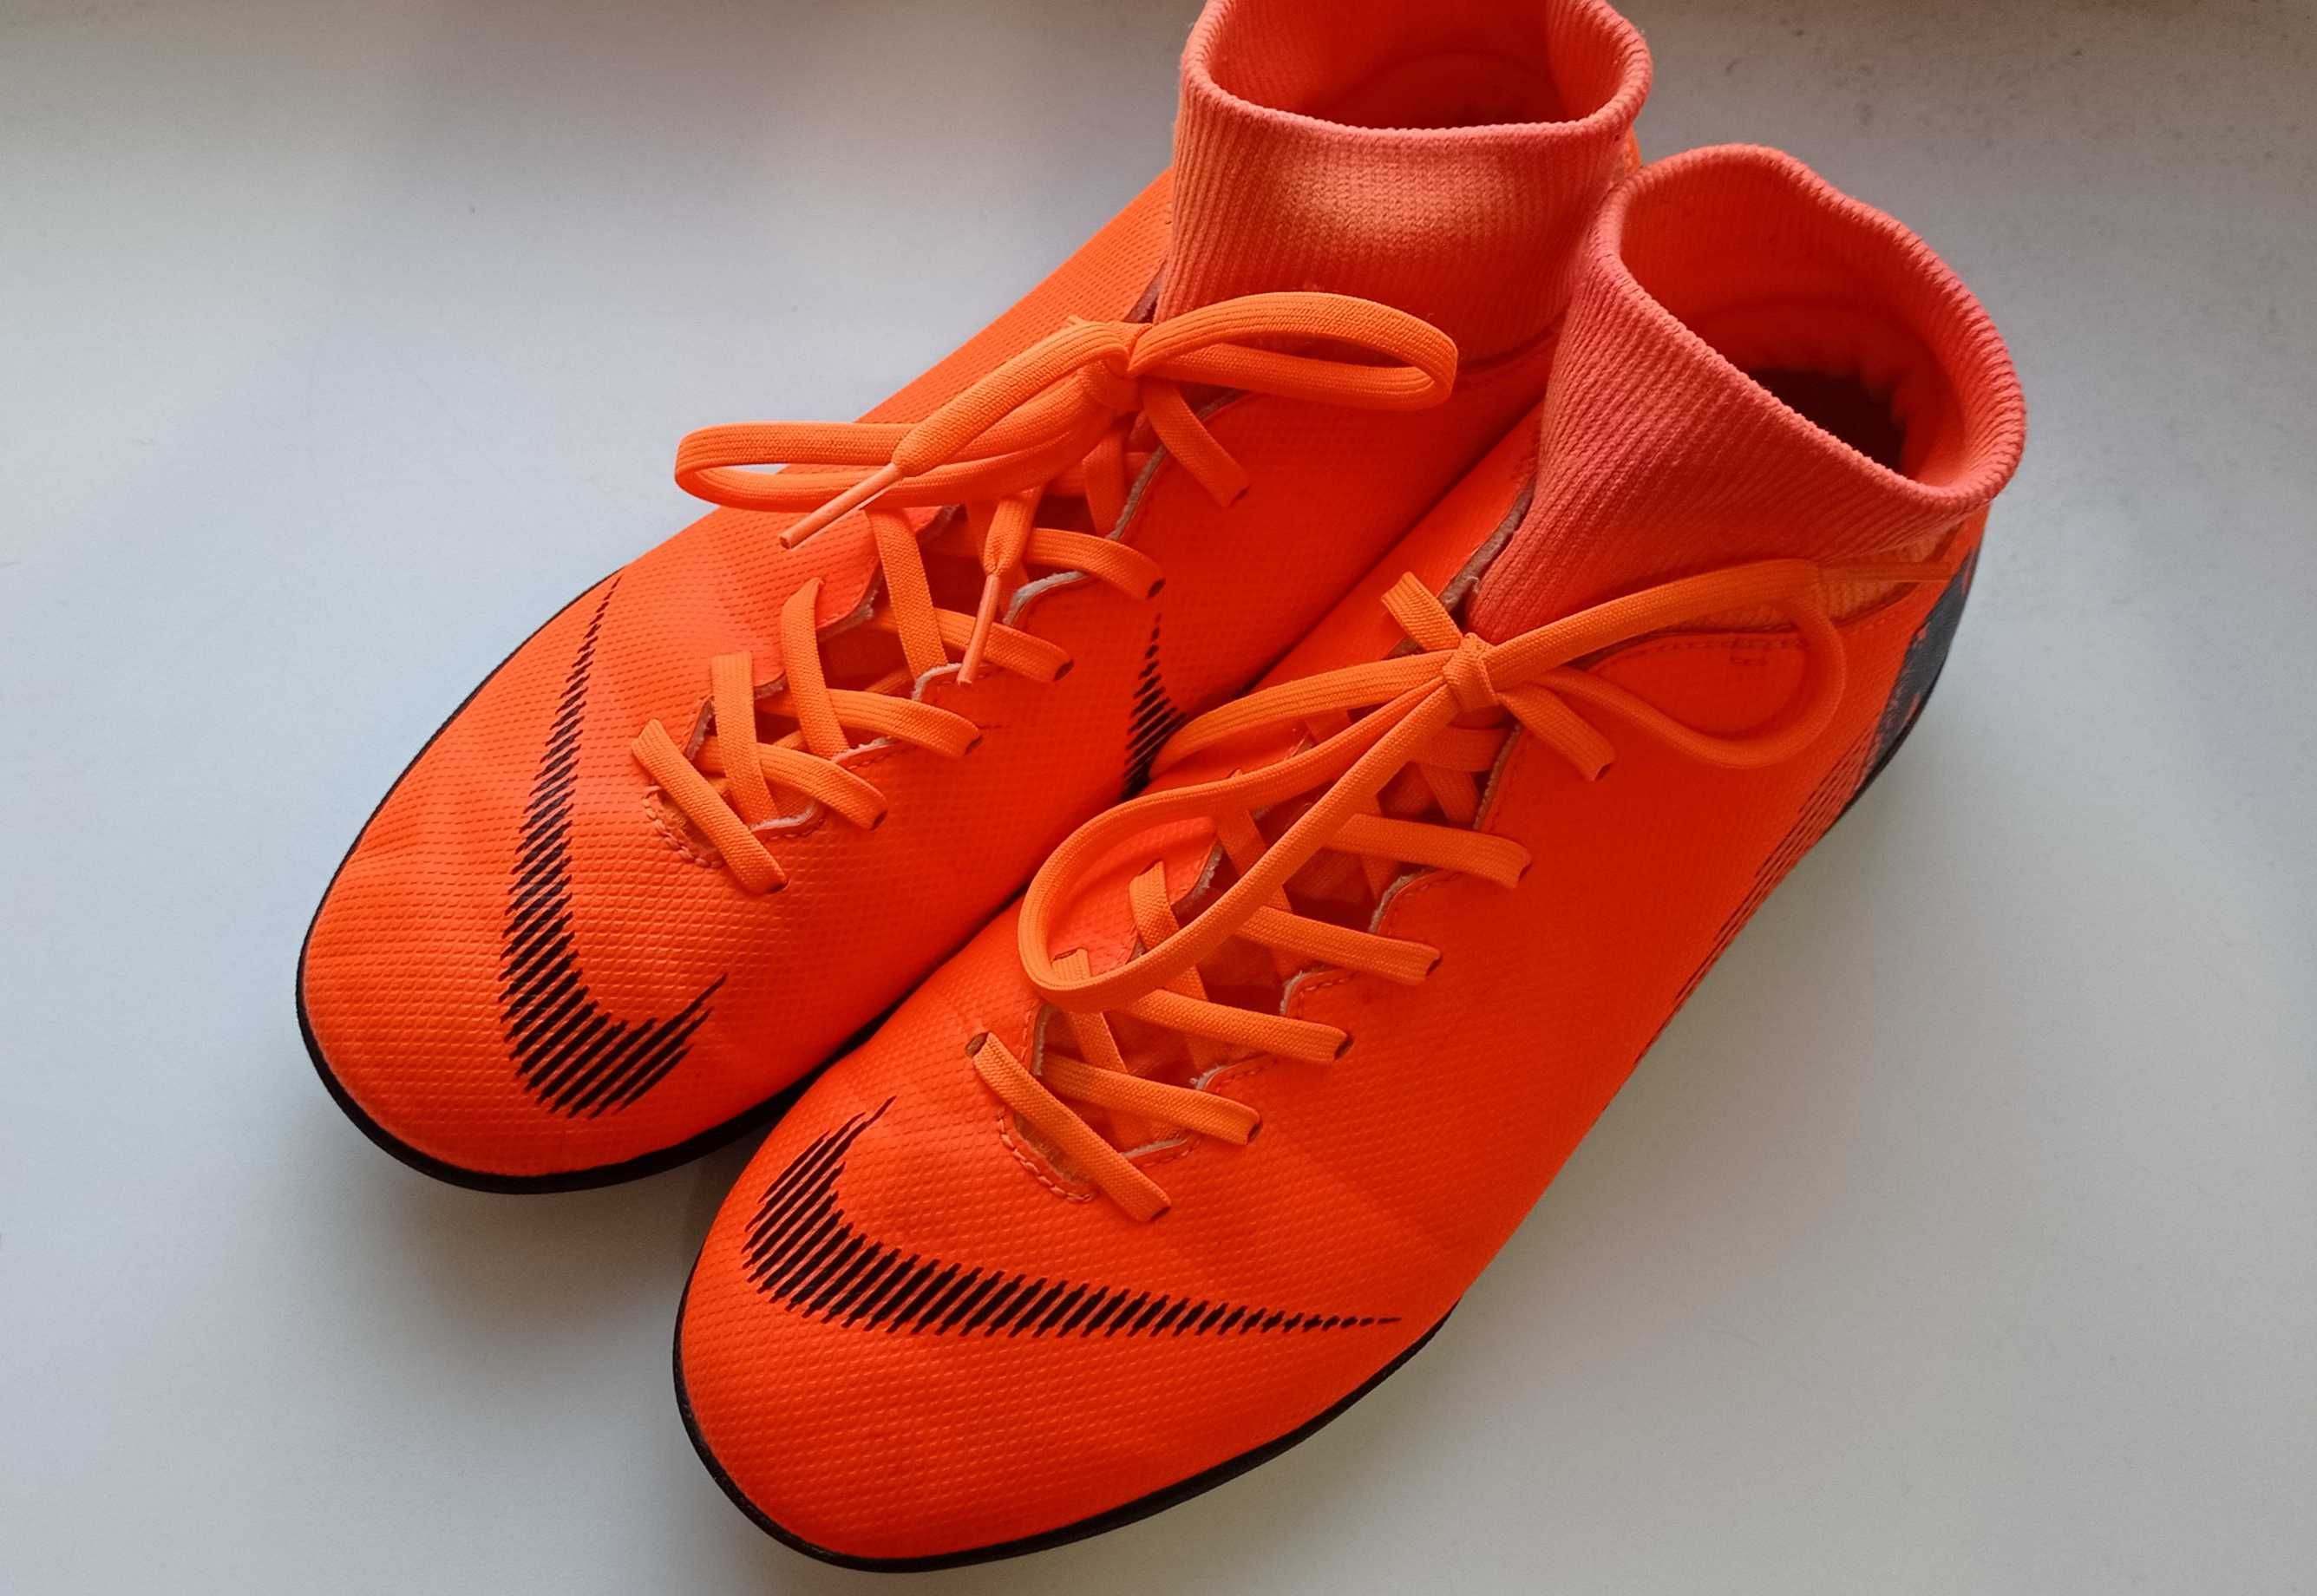 Nike Mercurial Superfly 6 Orange